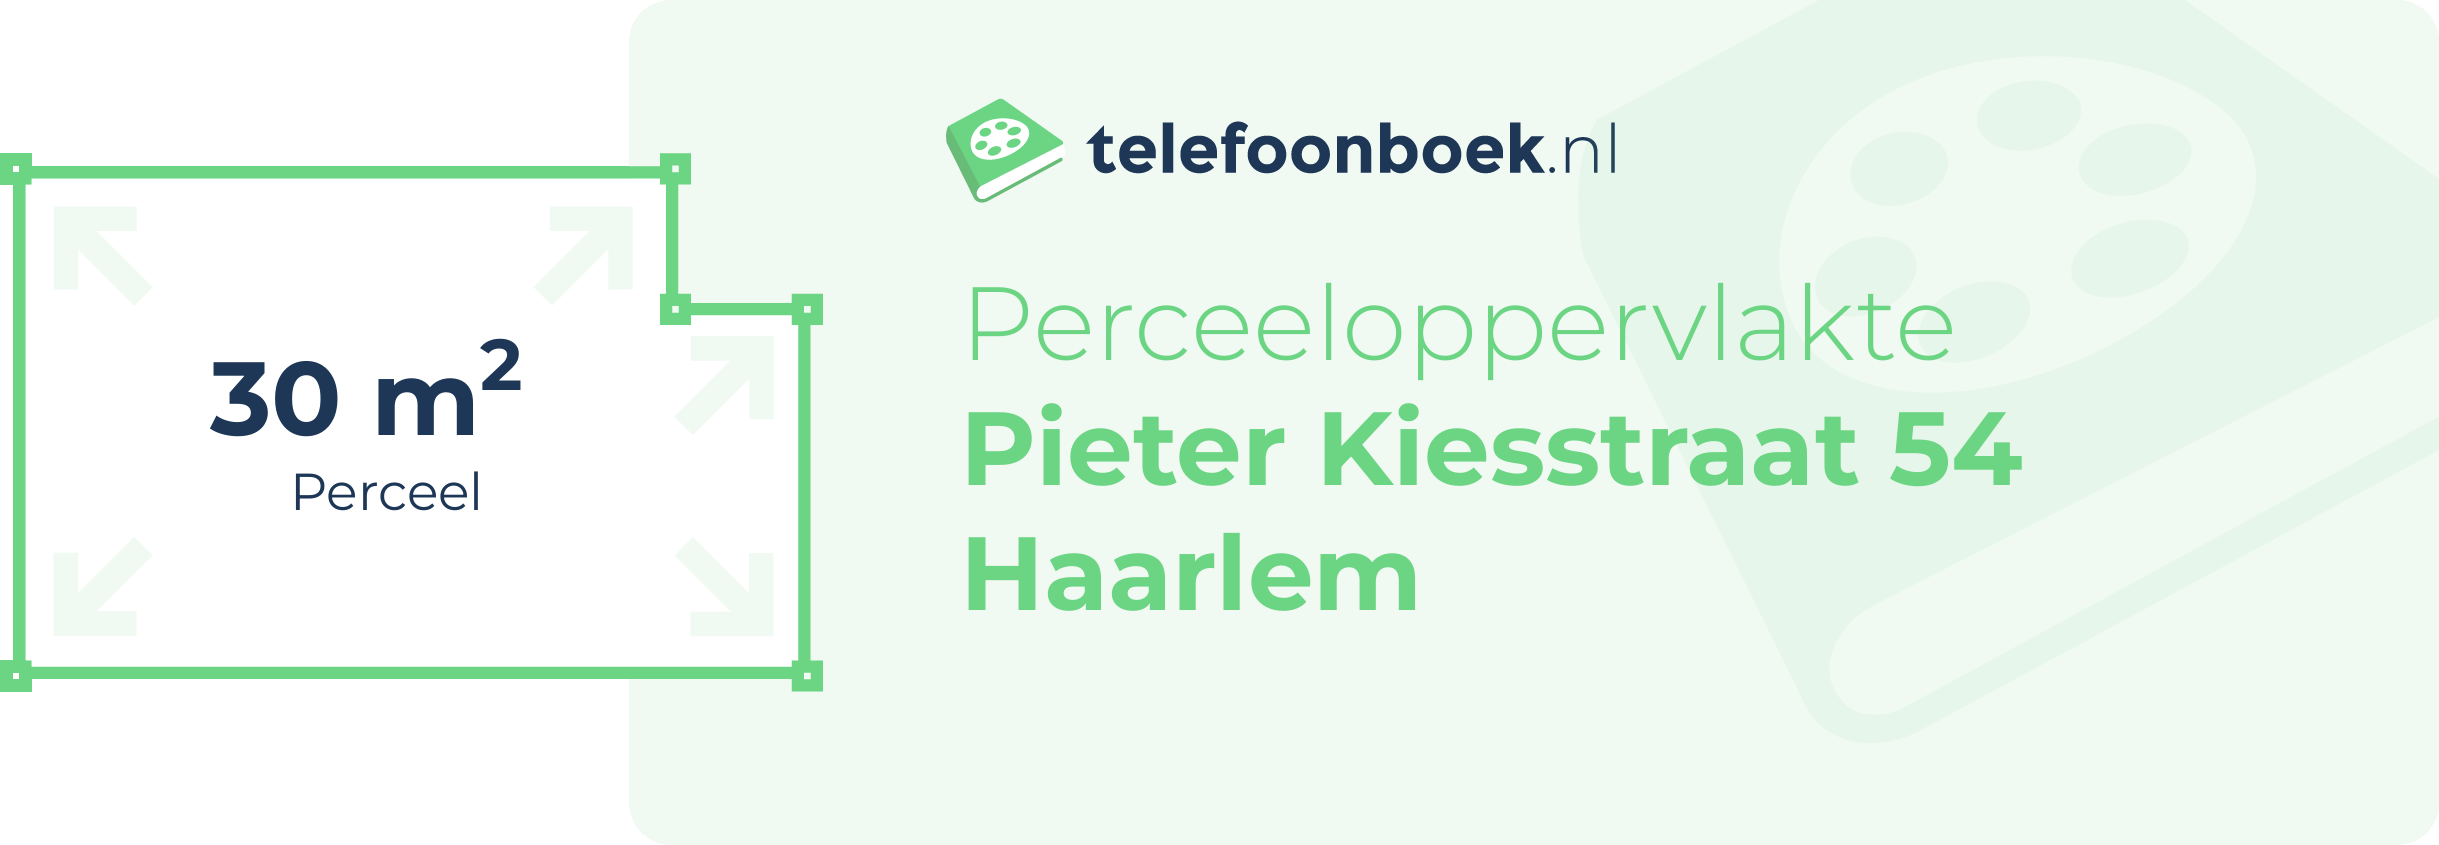 Perceeloppervlakte Pieter Kiesstraat 54 Haarlem